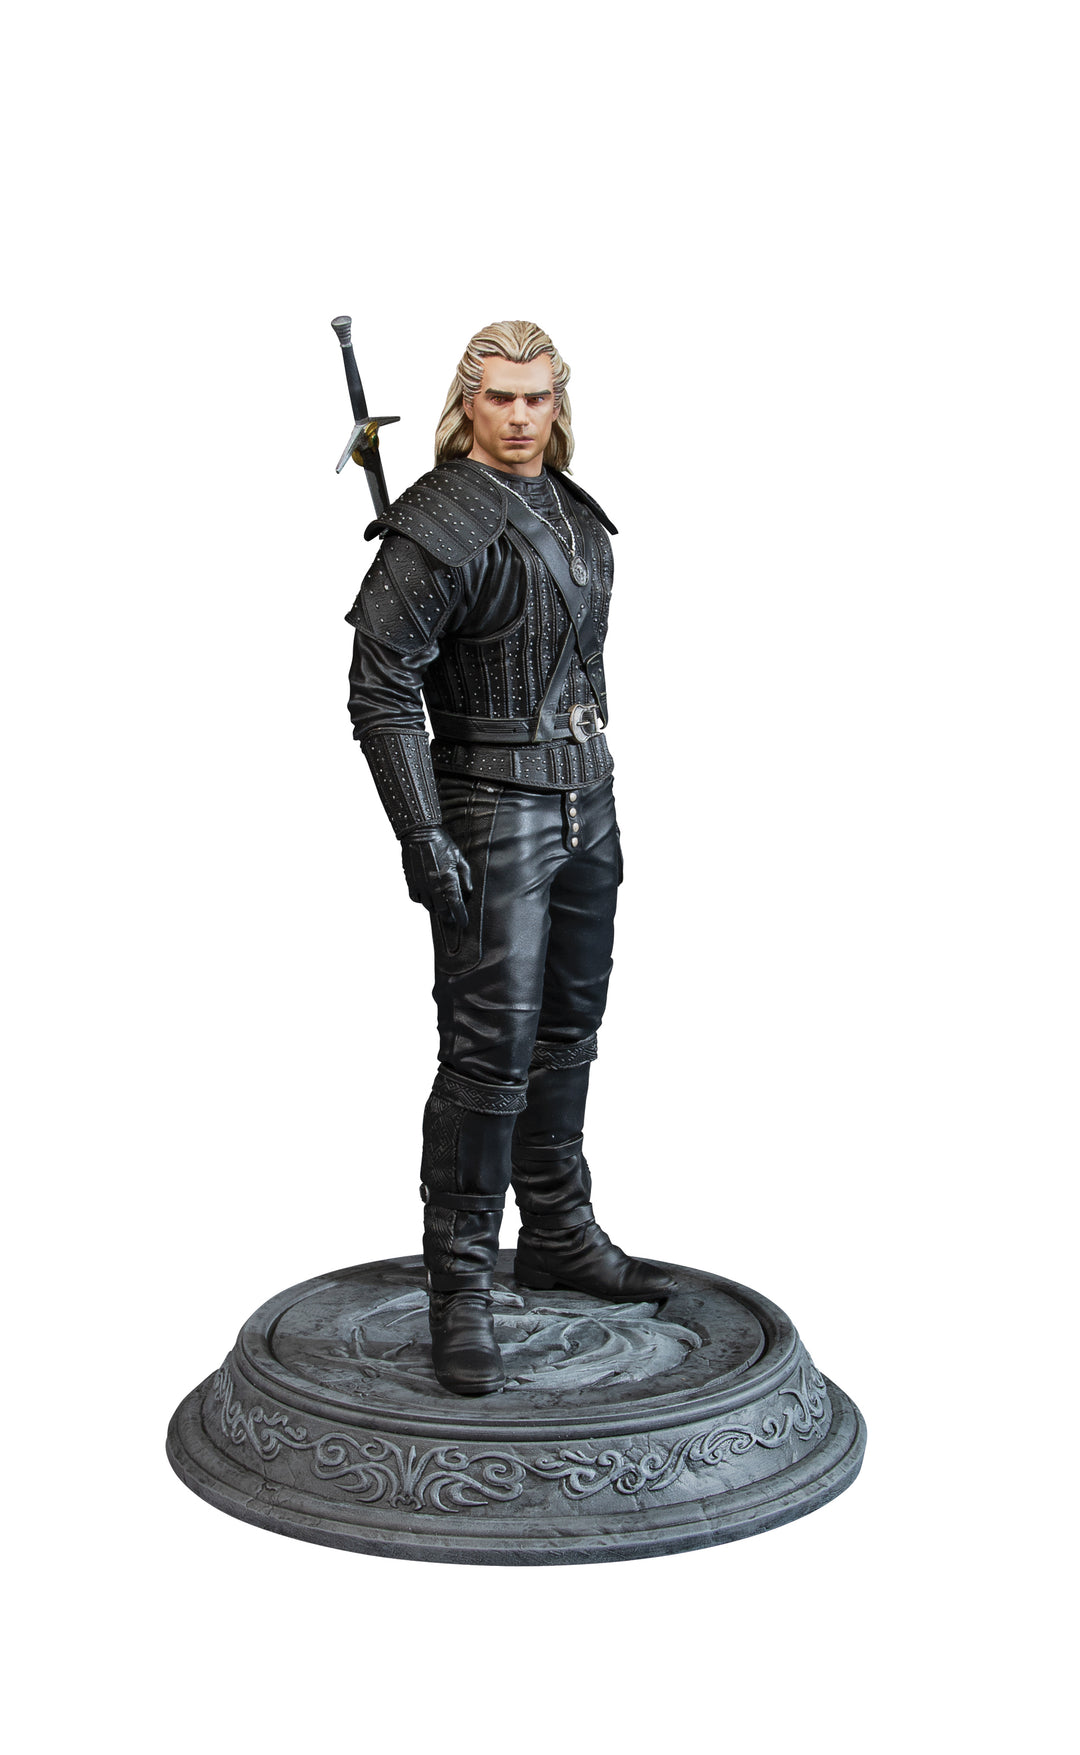 The Witcher Geralt 8.5" Deluxe Netflix Series Figure